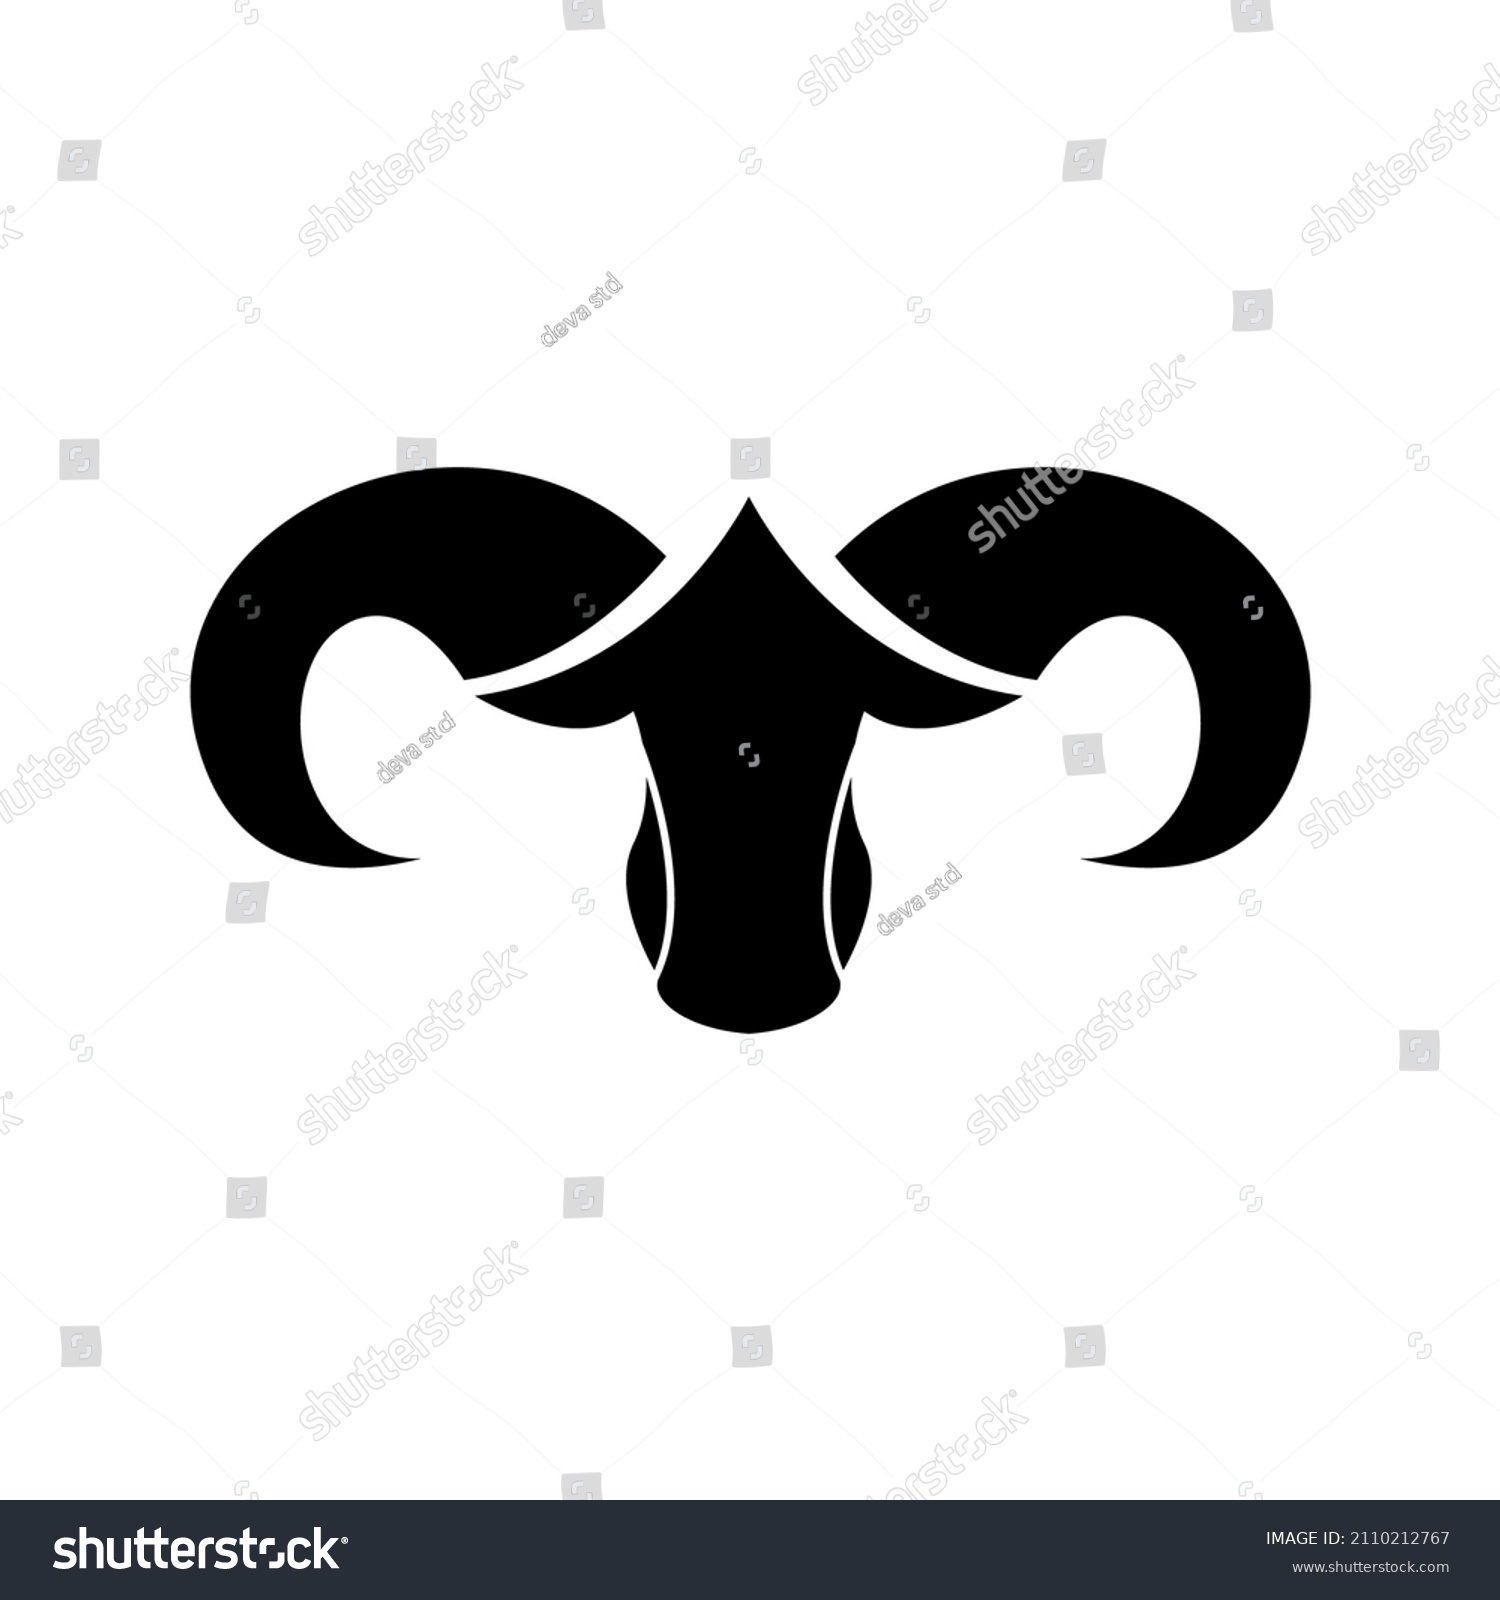 Black Suffolk Sheep Logo Design Vector Stock Vector (Royalty Free ...